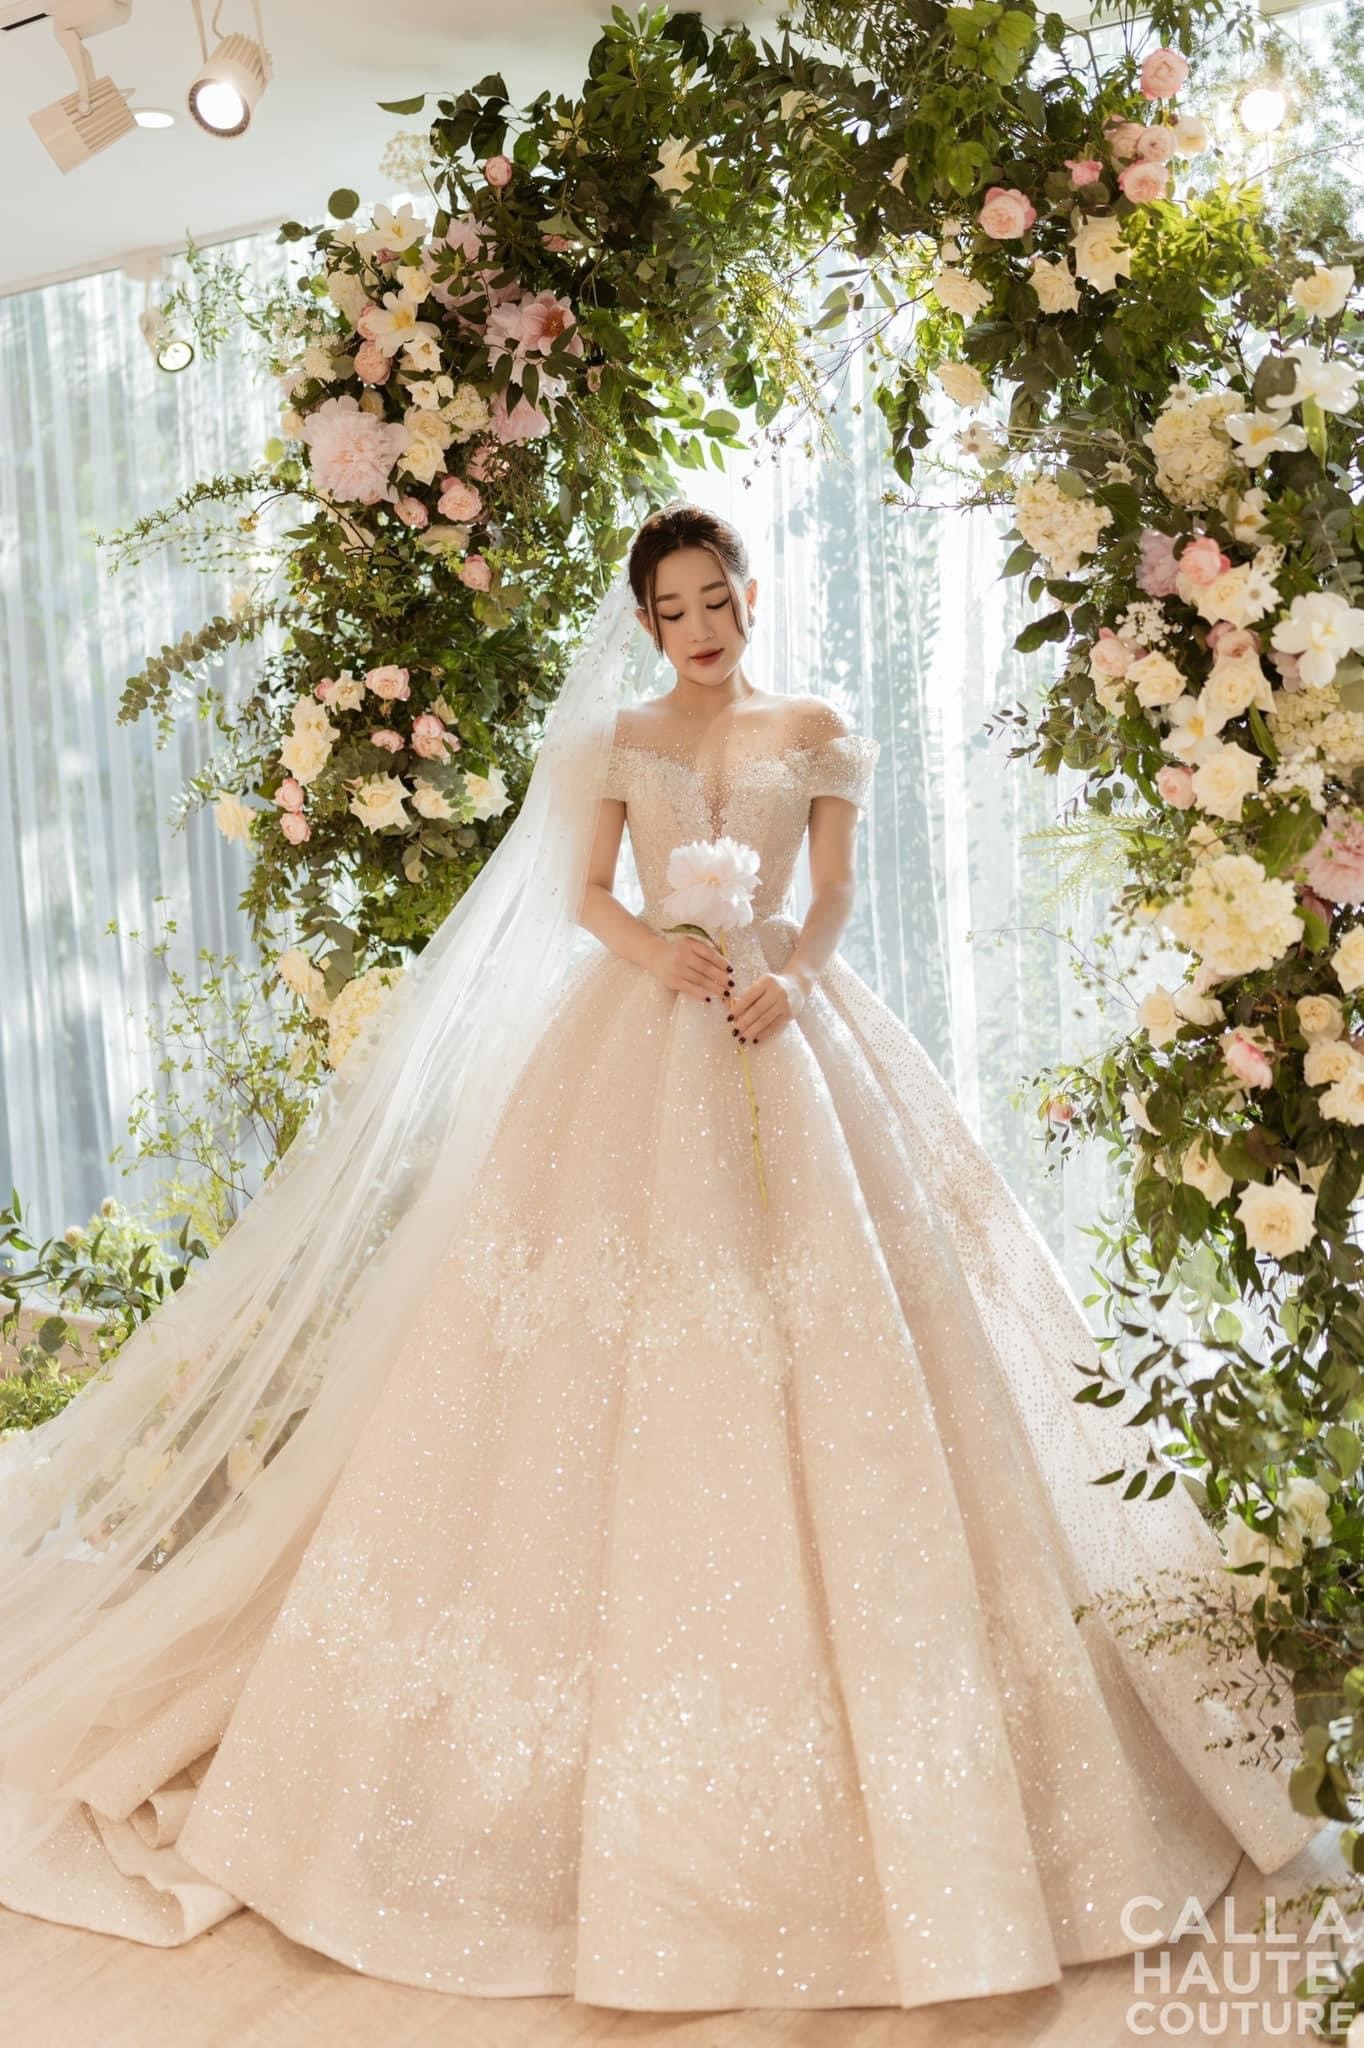 Ngắm lại 3 mẫu váy cưới trong mơ của vợ 3 cầu thủ Duy Mạnh - Thành Chung - Tấn Tài - Ảnh 9.